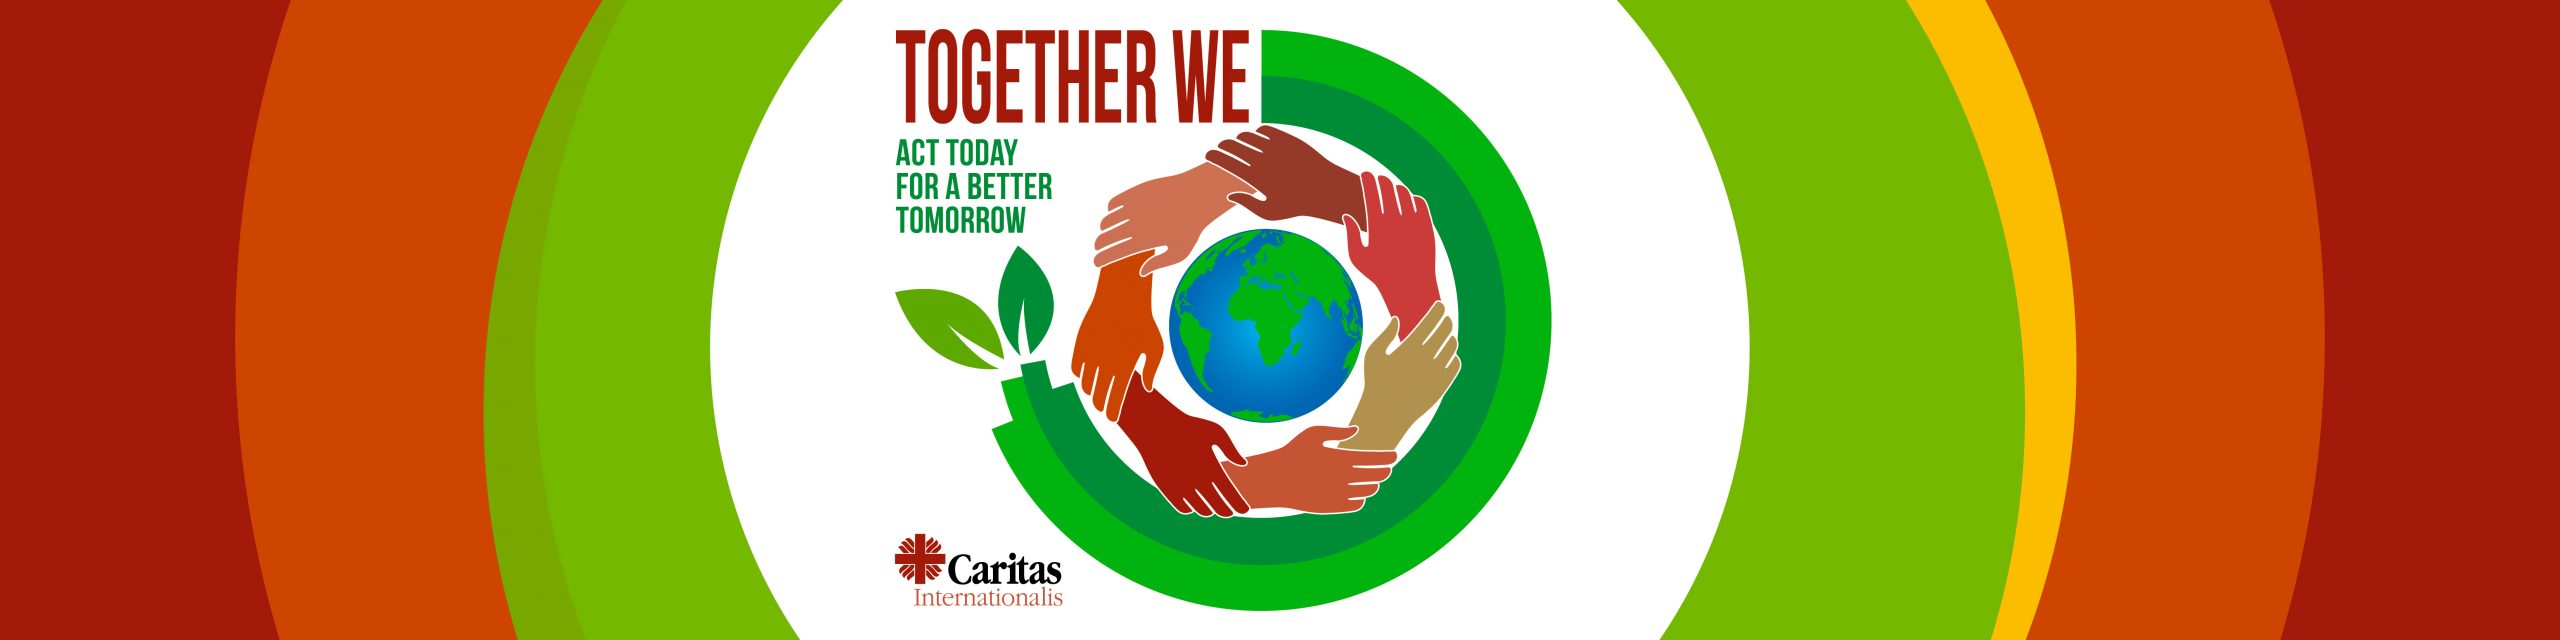 together we campagna caritas internationalis